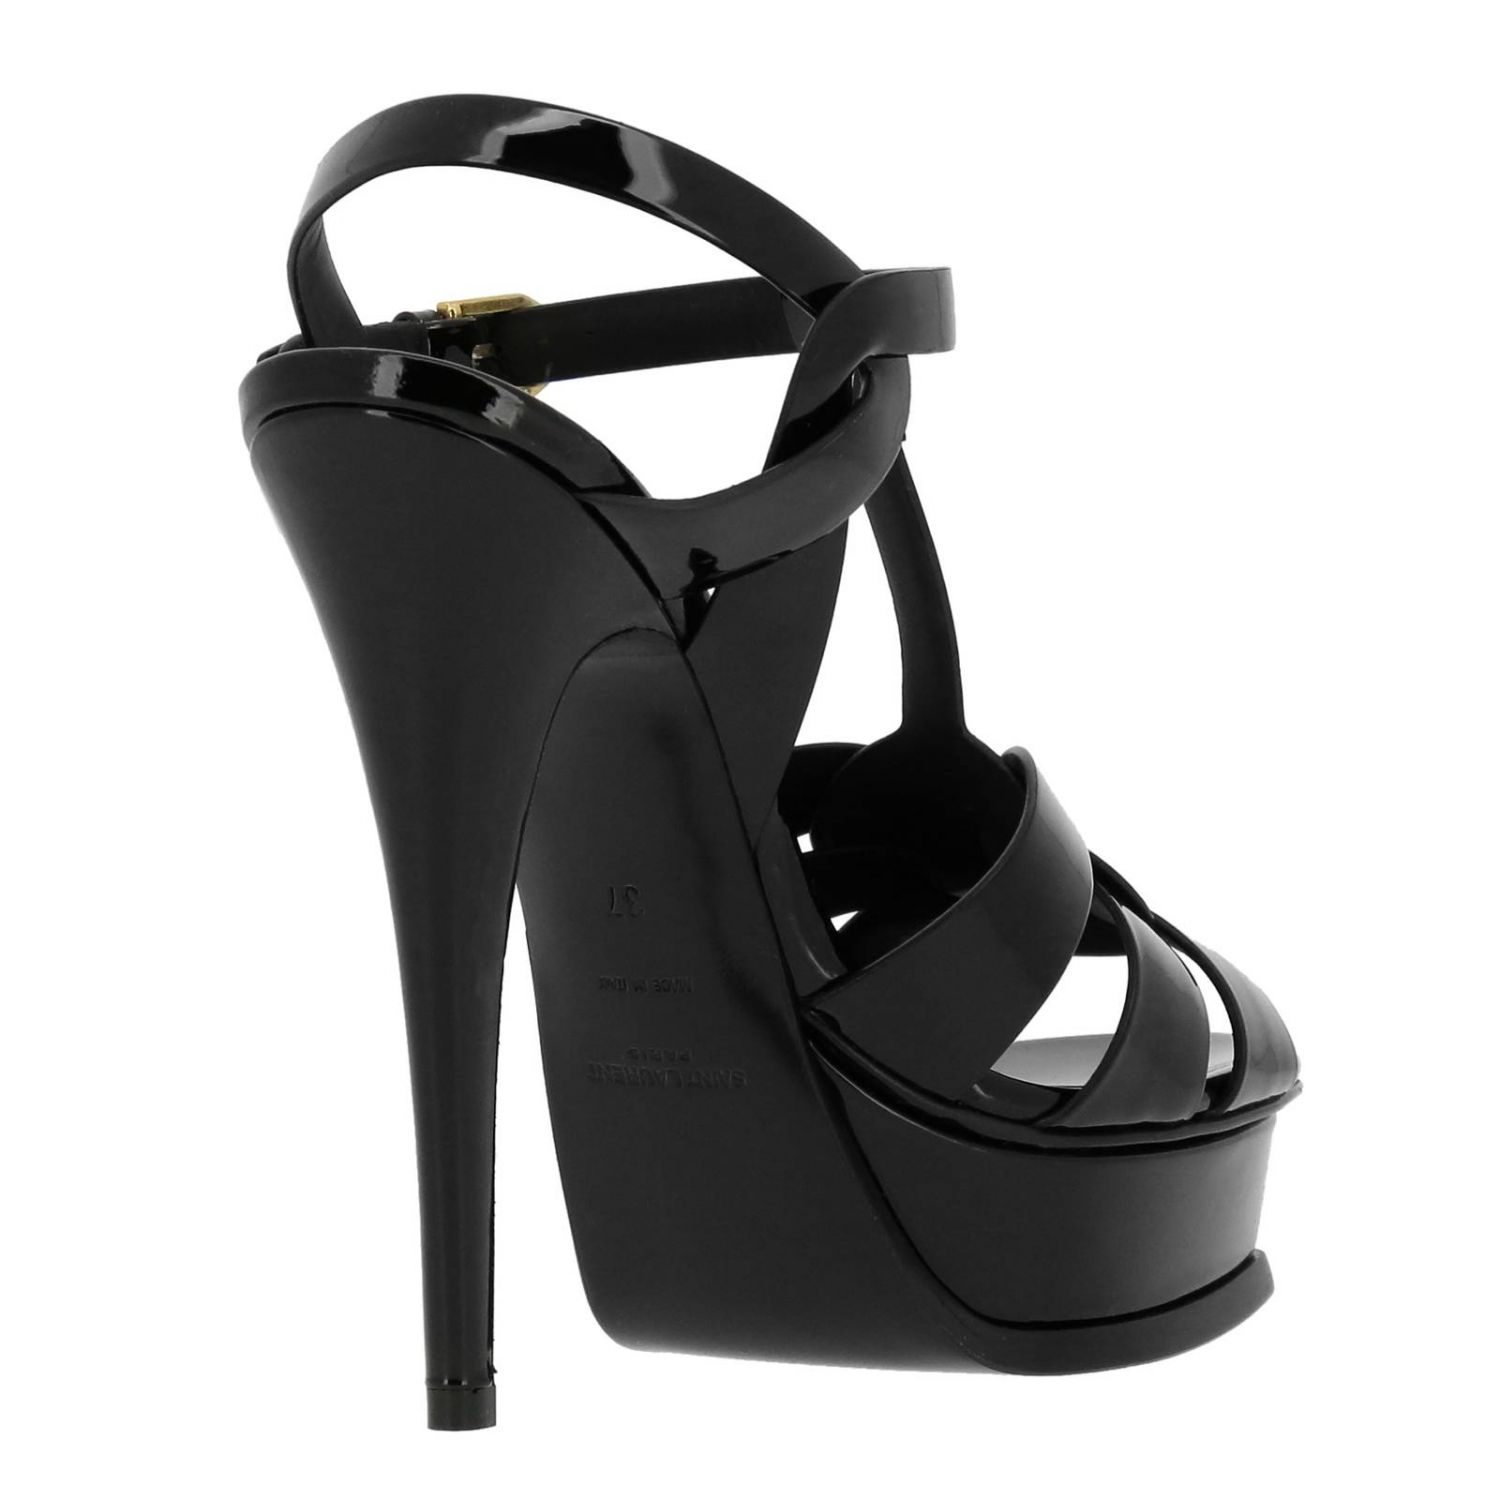 SAINT LAURENT: Shoes women | Heeled Sandals Saint Laurent Women Black ...